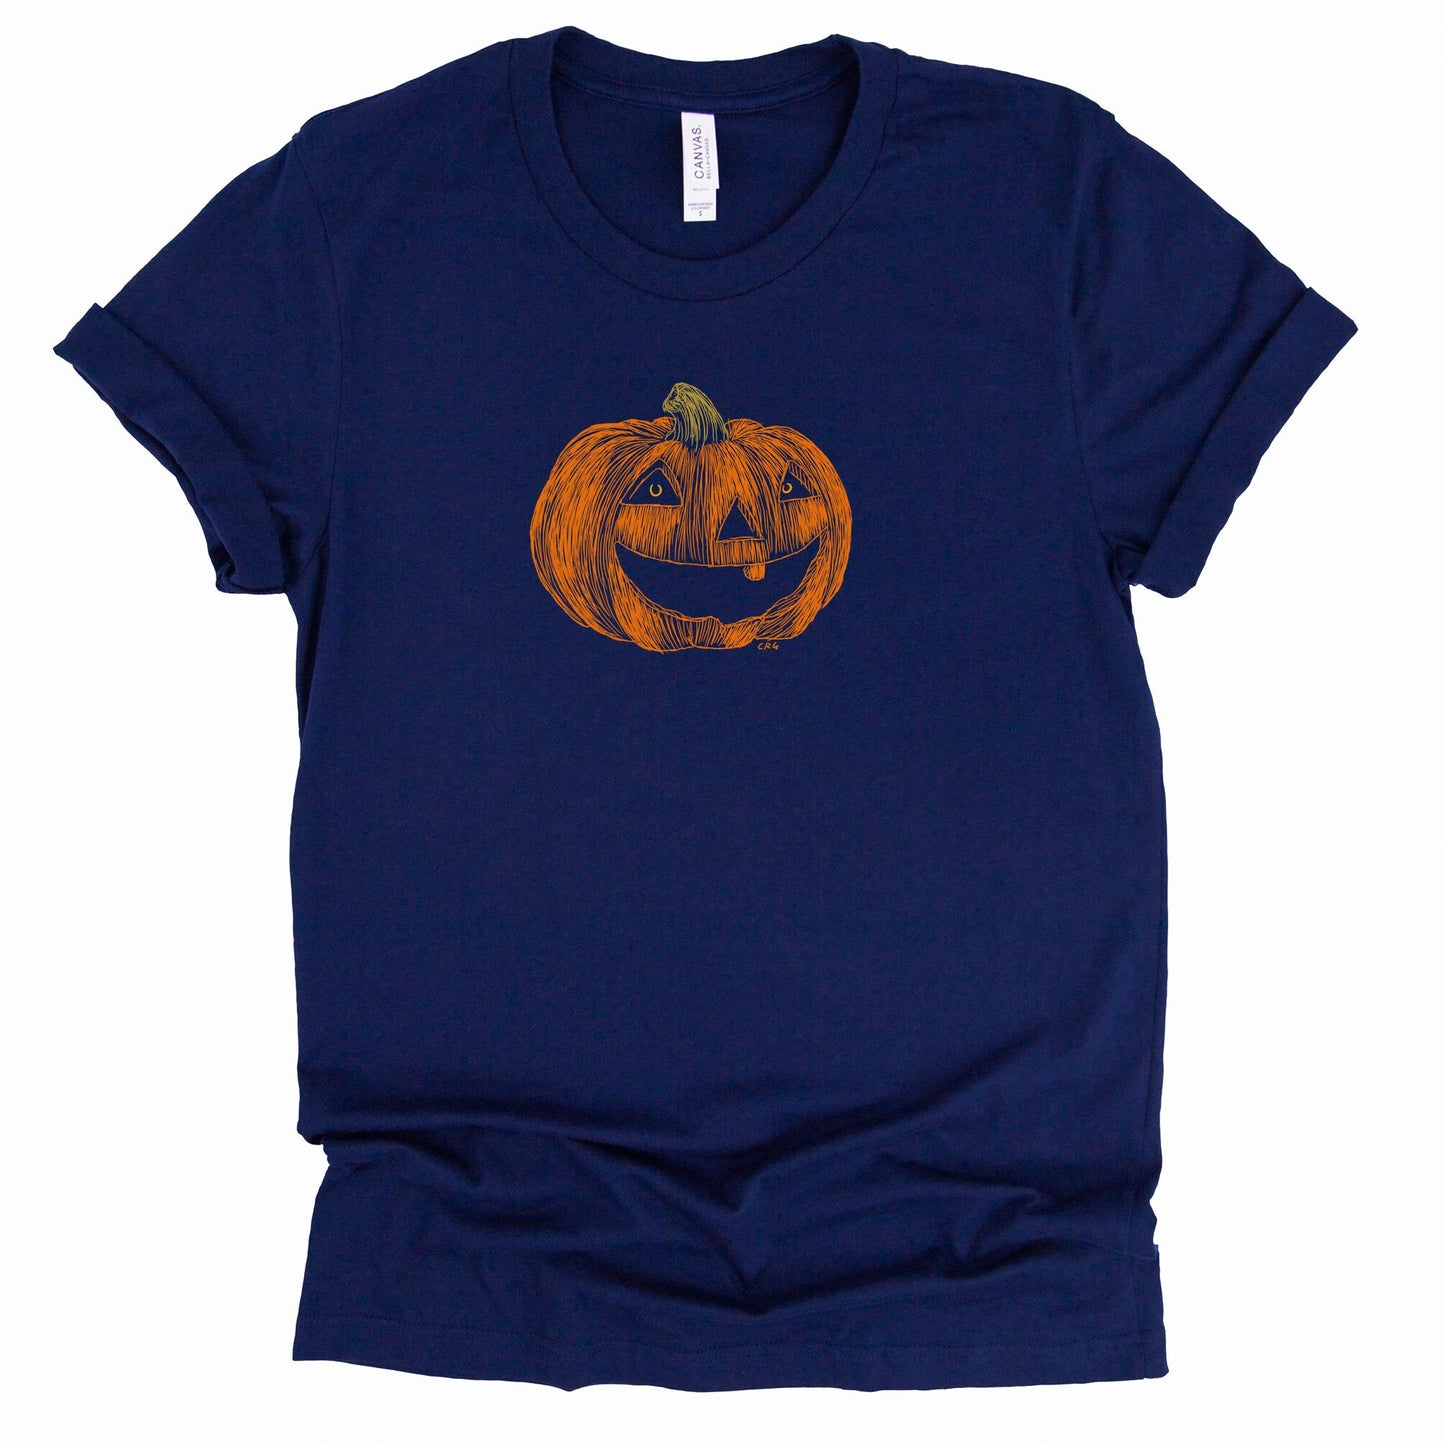 Halloween Pumpkin Shirt